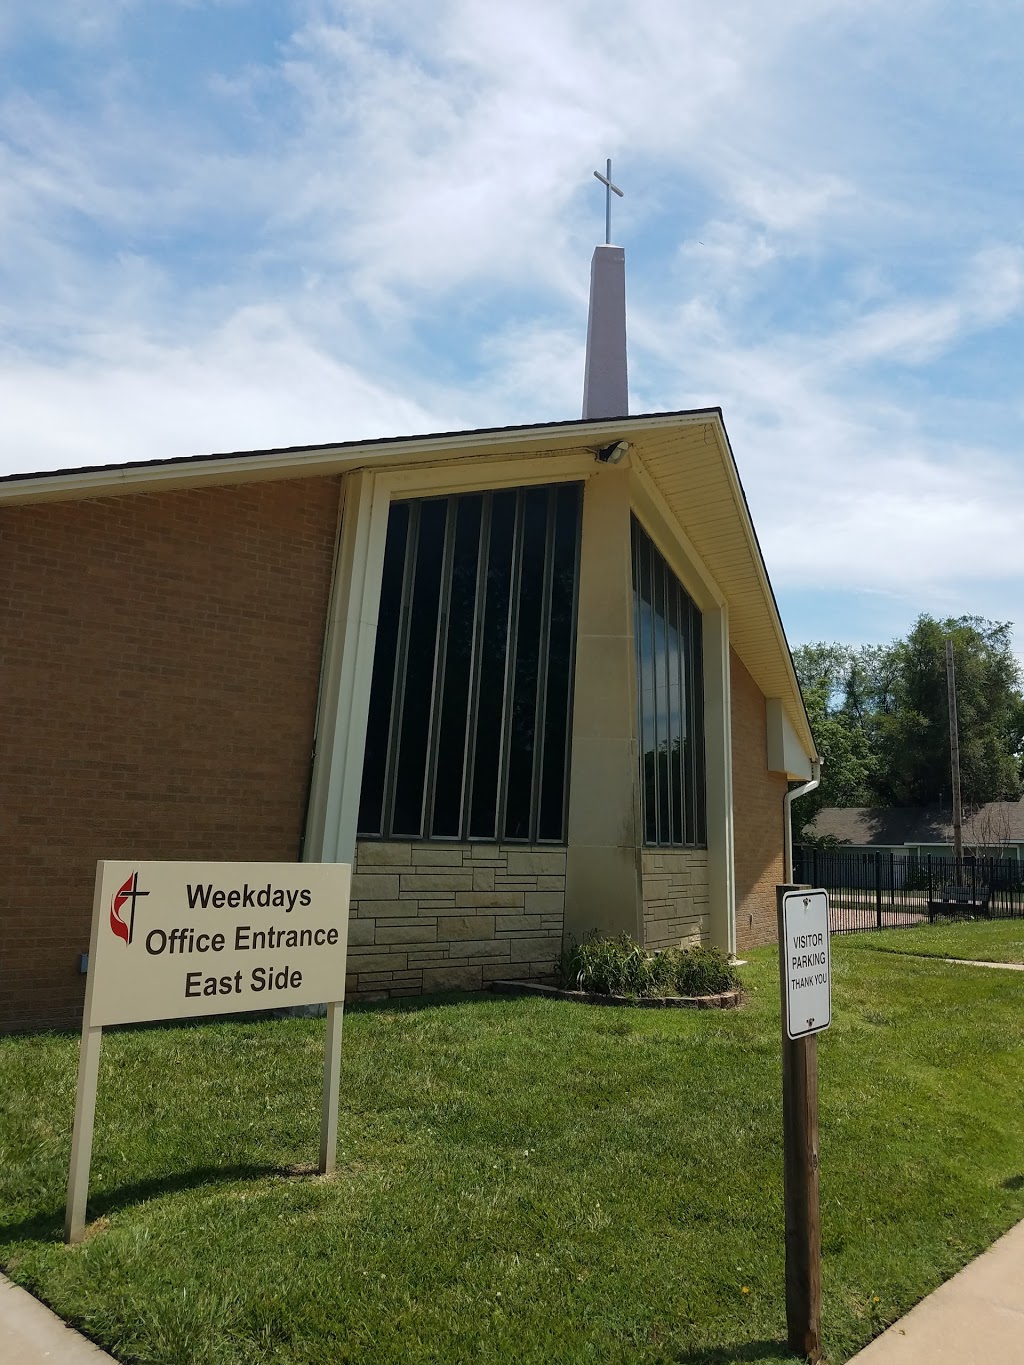 Goddard United Methodist Church | 300 N Cedar St, Goddard, KS 67052 | Phone: (316) 794-2207